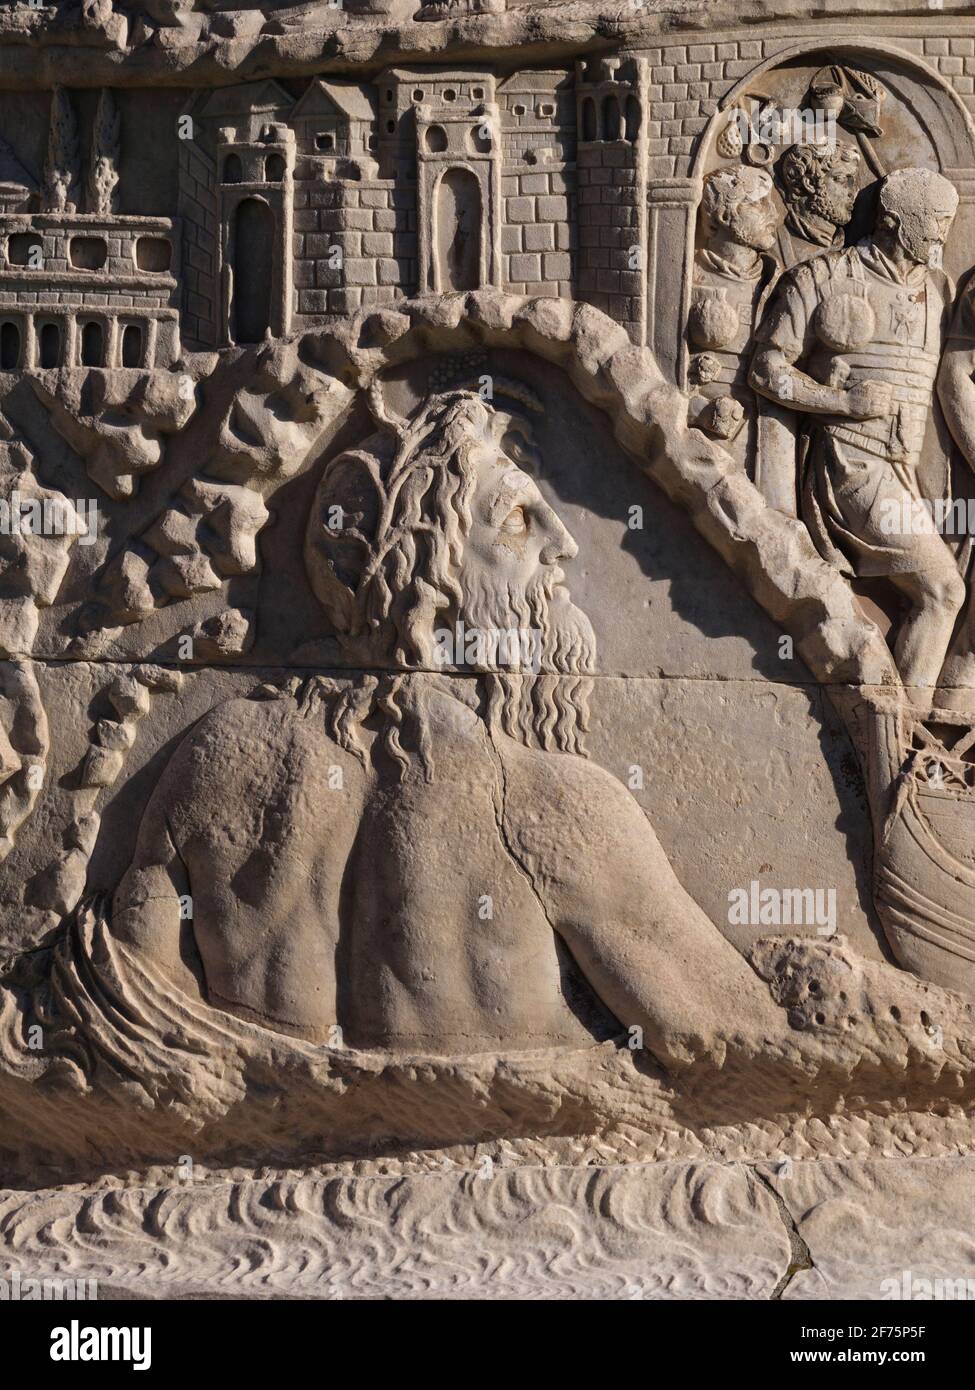 Roma. Italia. Colonna di Traiano (colonna Traiana), 113 d.C. Particolare di scena raffigurante la personificazione del Danubio come il Dio romano Danubius. Foto Stock